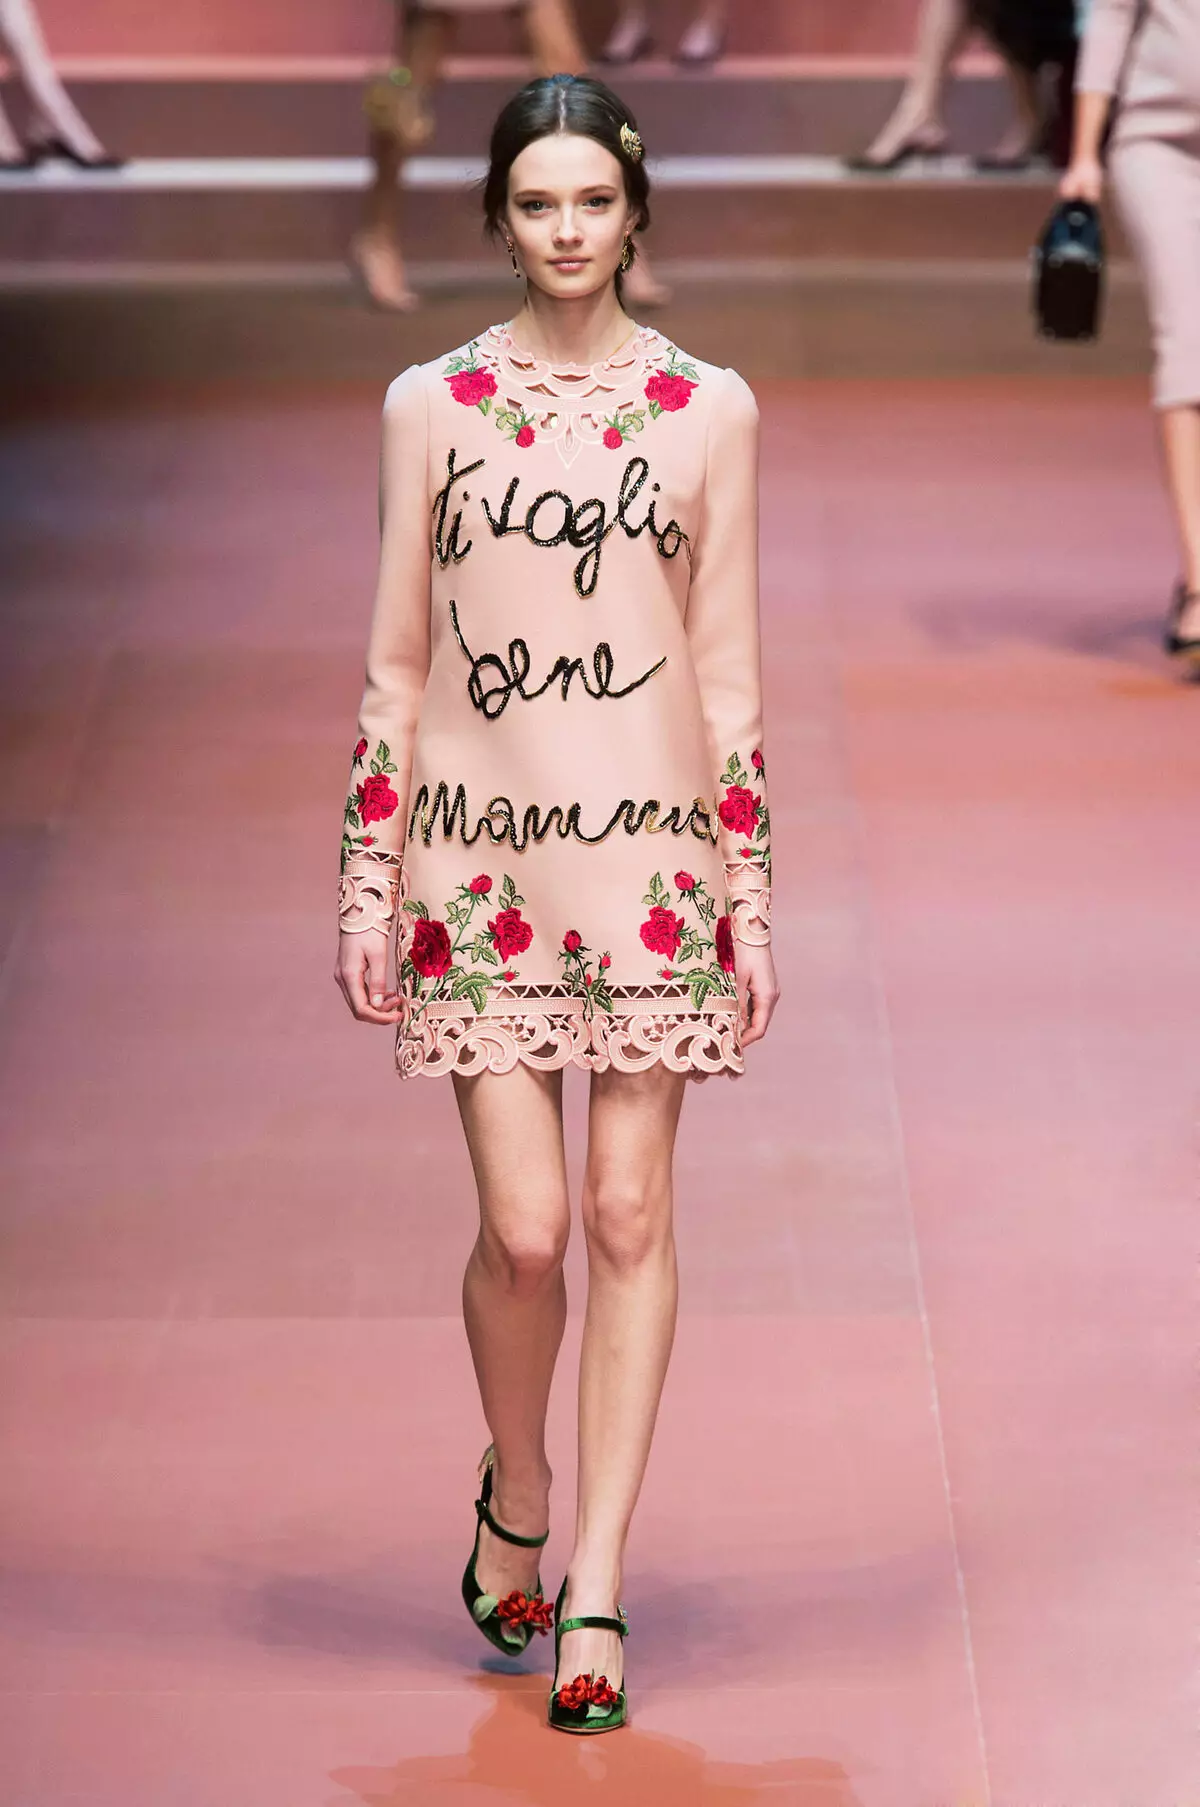 Ροζ φόρεμα με τριαντάφυλλα σε μια επίδειξη μόδας Dolce & Gabbana